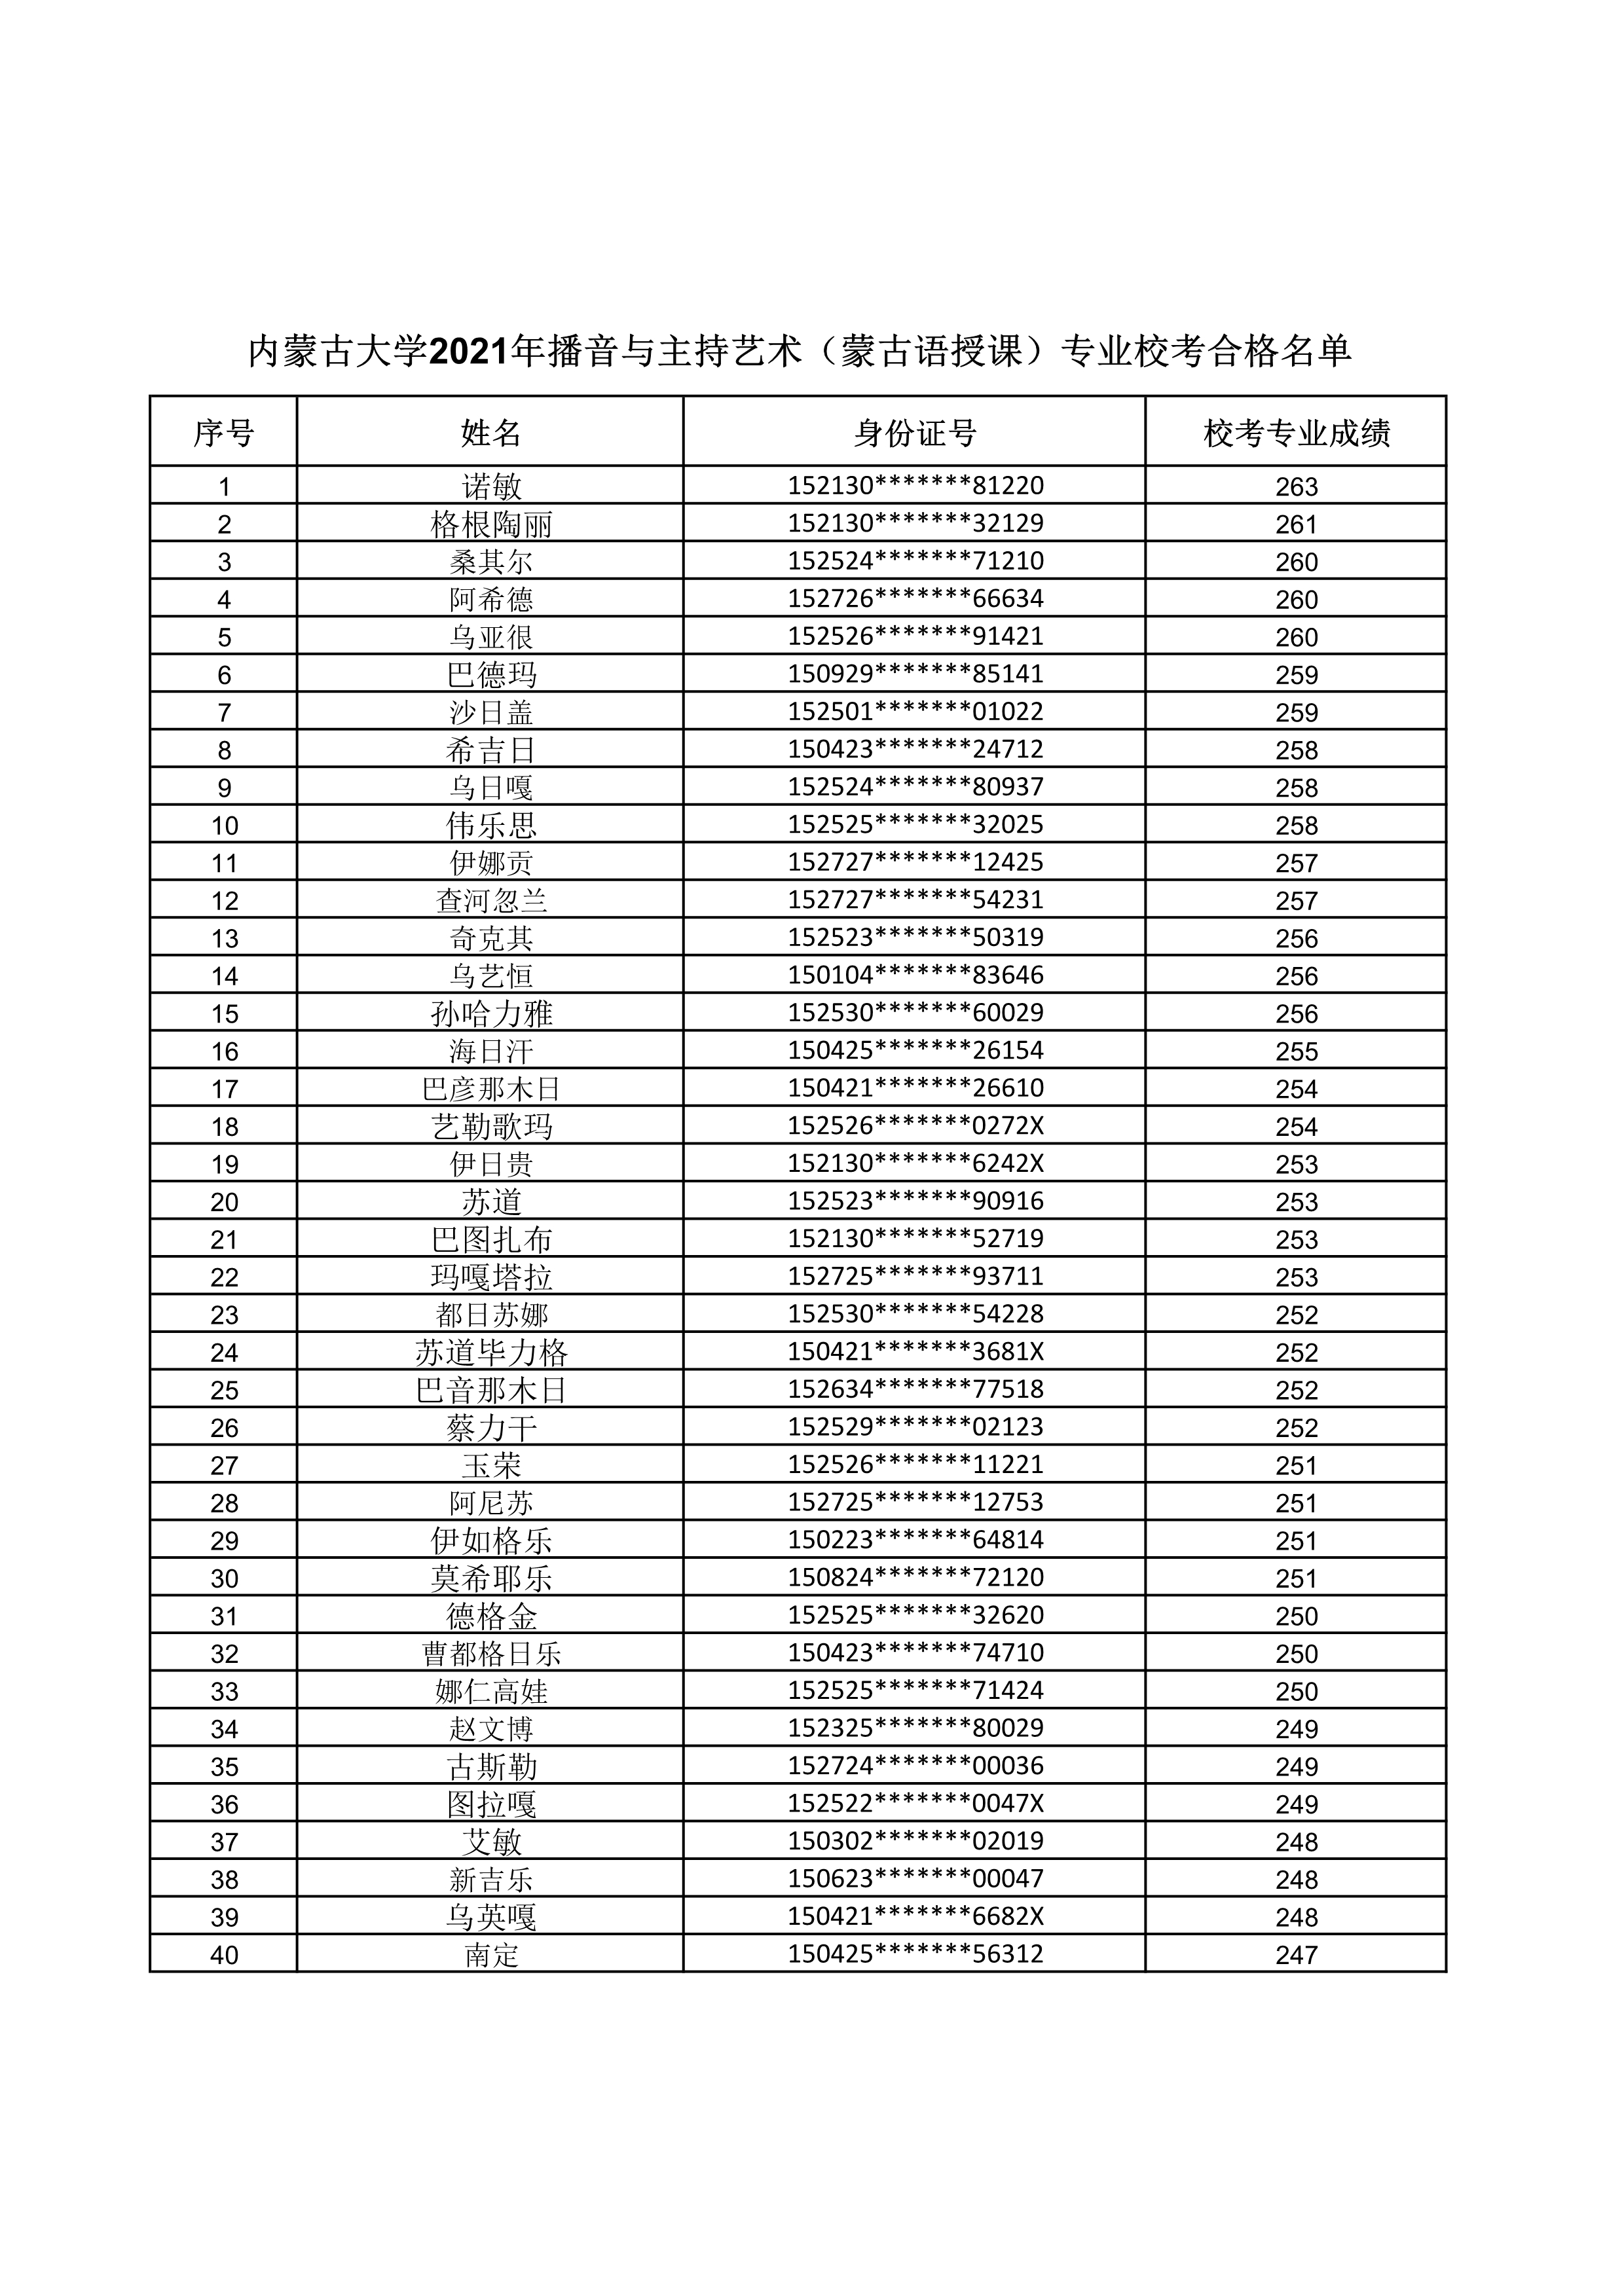 内蒙古大学2021年播音与主持艺术（蒙古语授课）专业校考合格名单_1.jpg